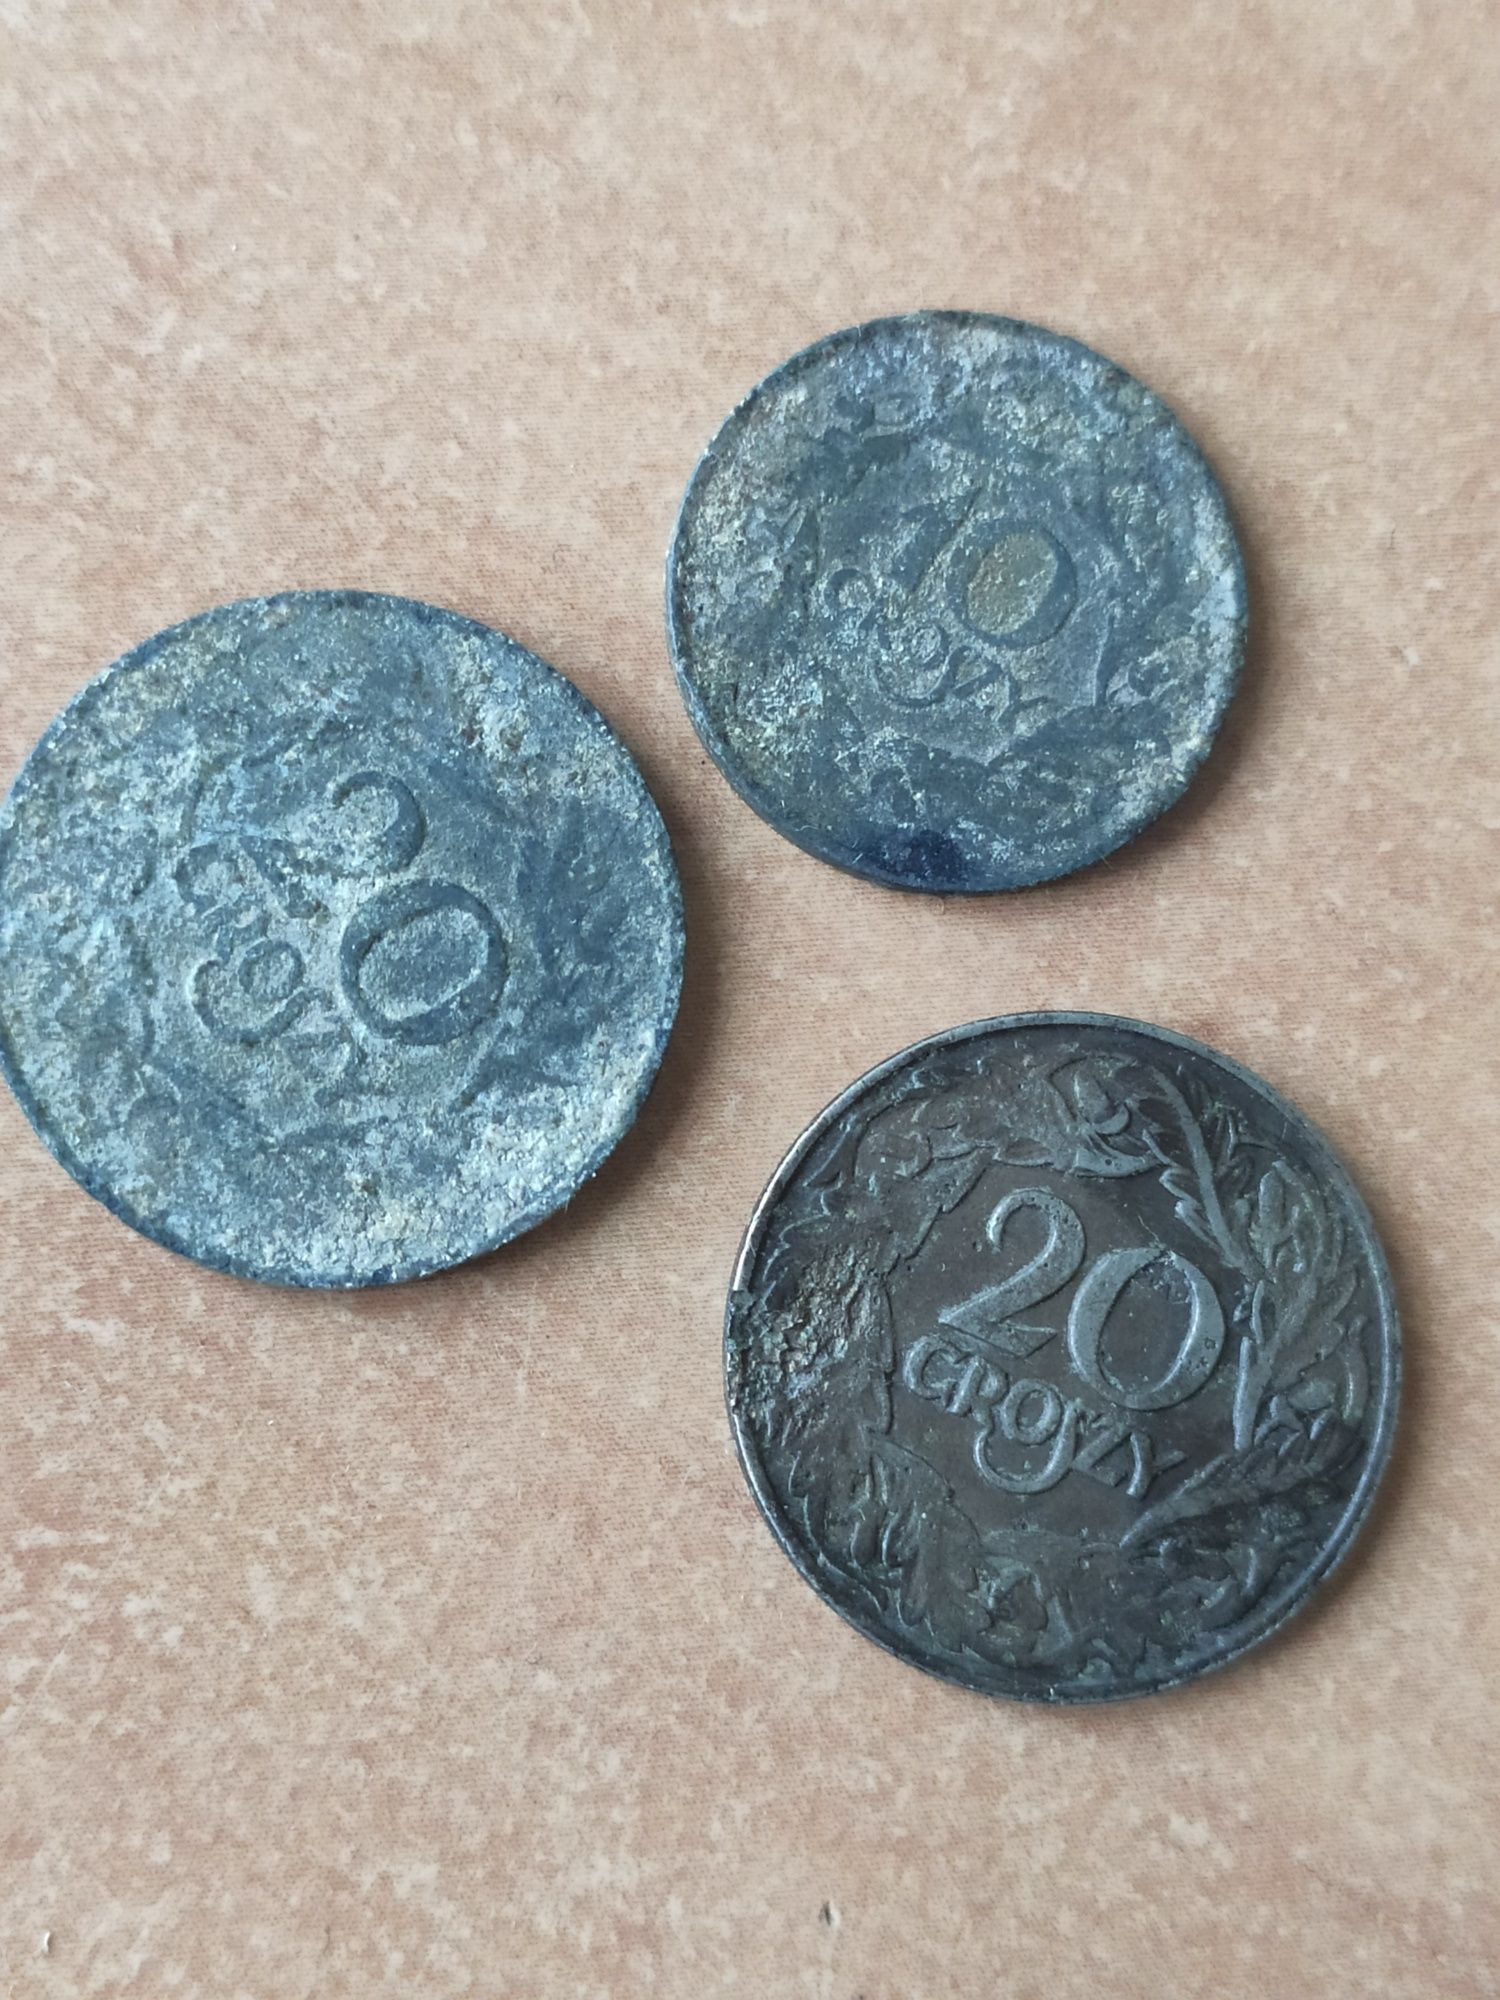 3 stare przedwojenne polskie monety - 2 x 20 groszy i 1 x 10 groszy